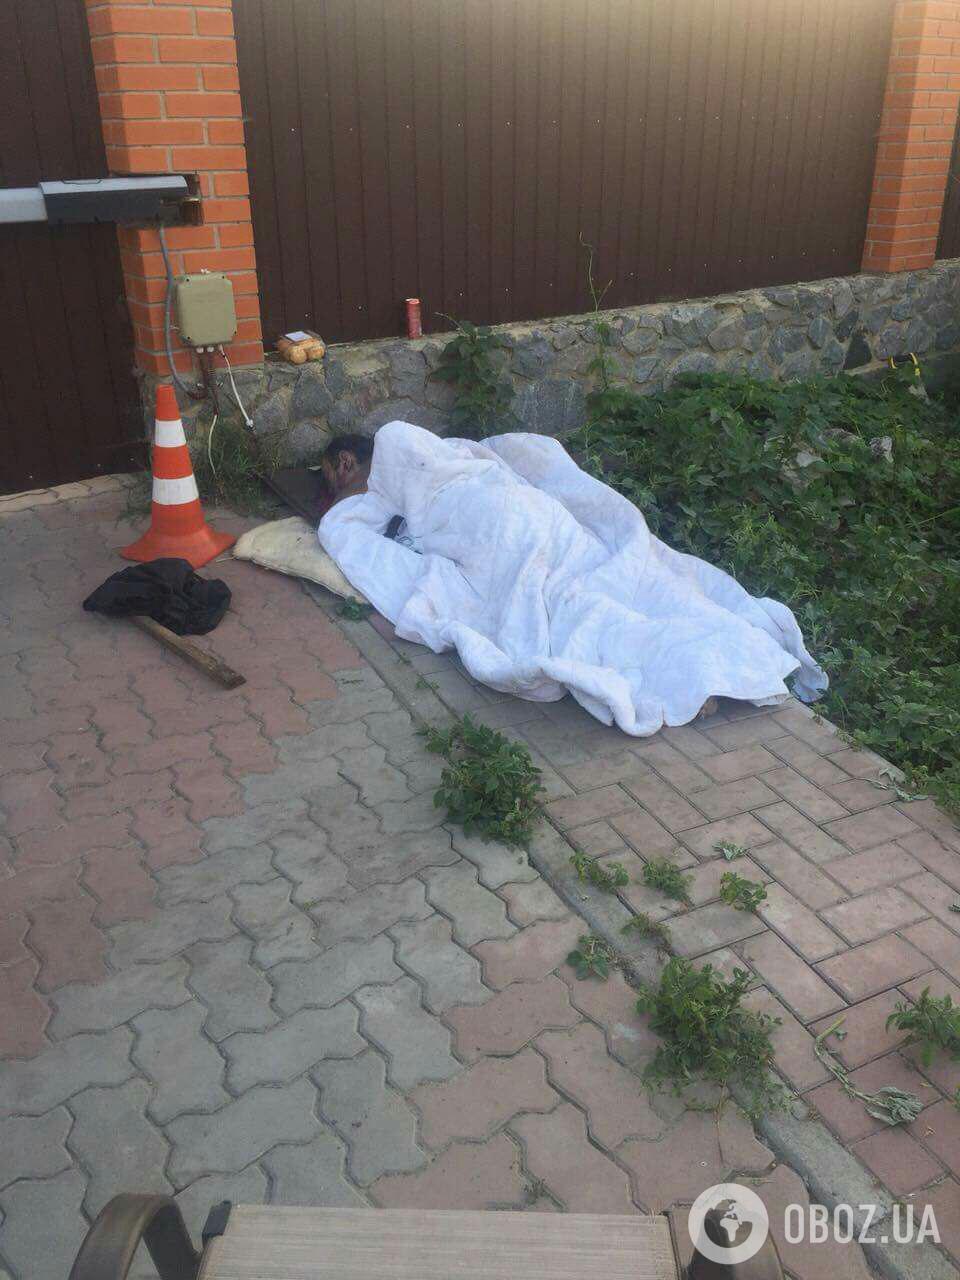 В Сумах застрелили экс-чиновника: первые кровавые фото с места убийства, 18+